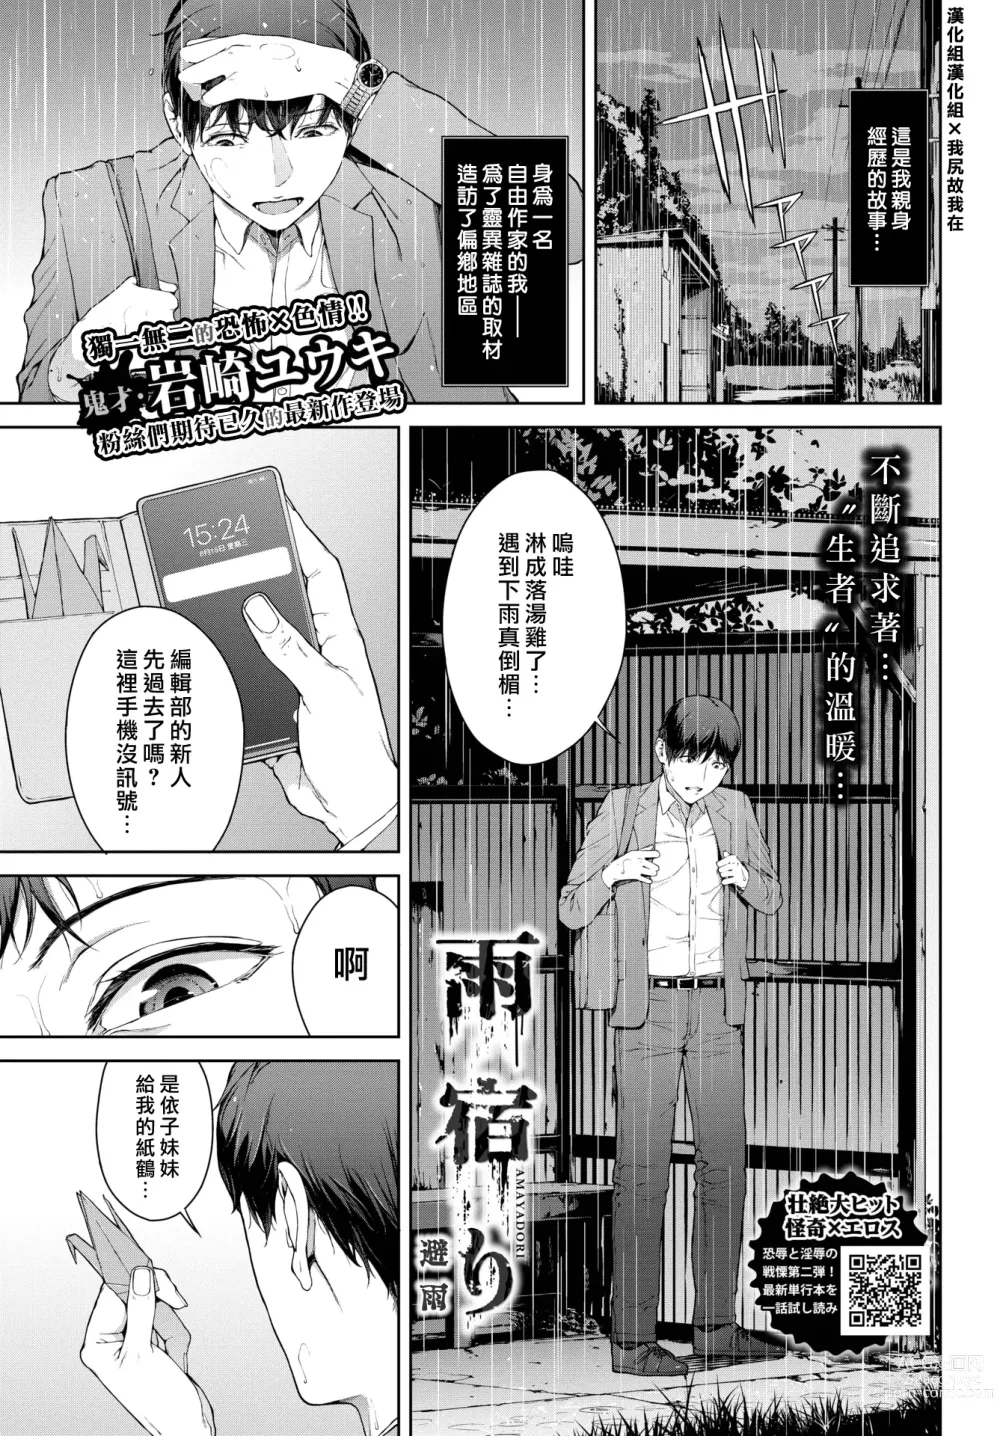 Page 1 of manga 躲雨